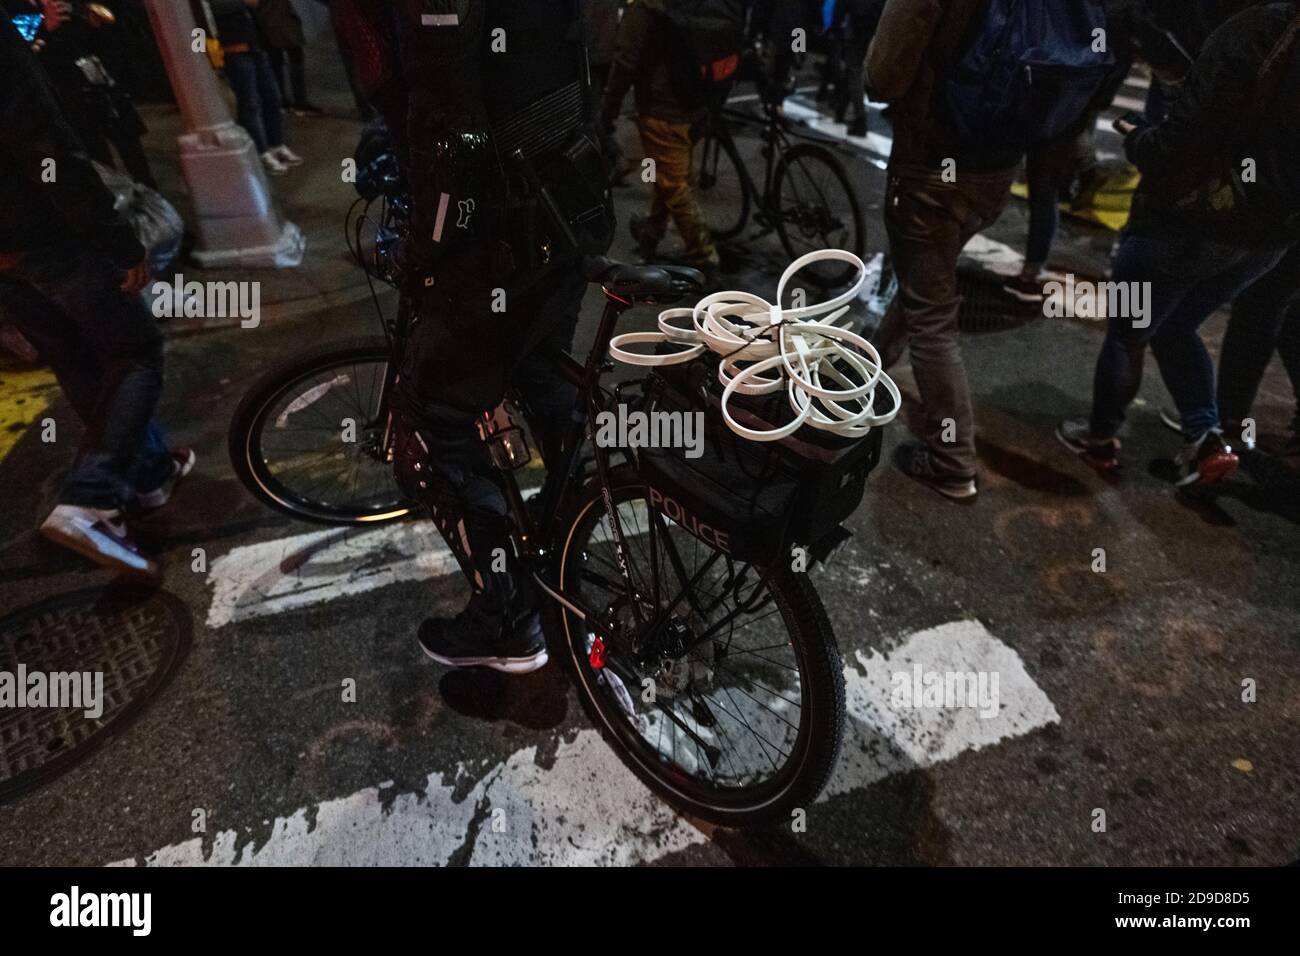 New York, New York, États-Unis. 4 novembre 2020. Des restrictions en plastique sur un vélo de police tandis que plusieurs centaines de manifestants anti-Trump défilaient dans le quartier de Greenwich Village à New York, tandis que les États-Unis attendent les résultats de leur élection présidentielle Banque D'Images